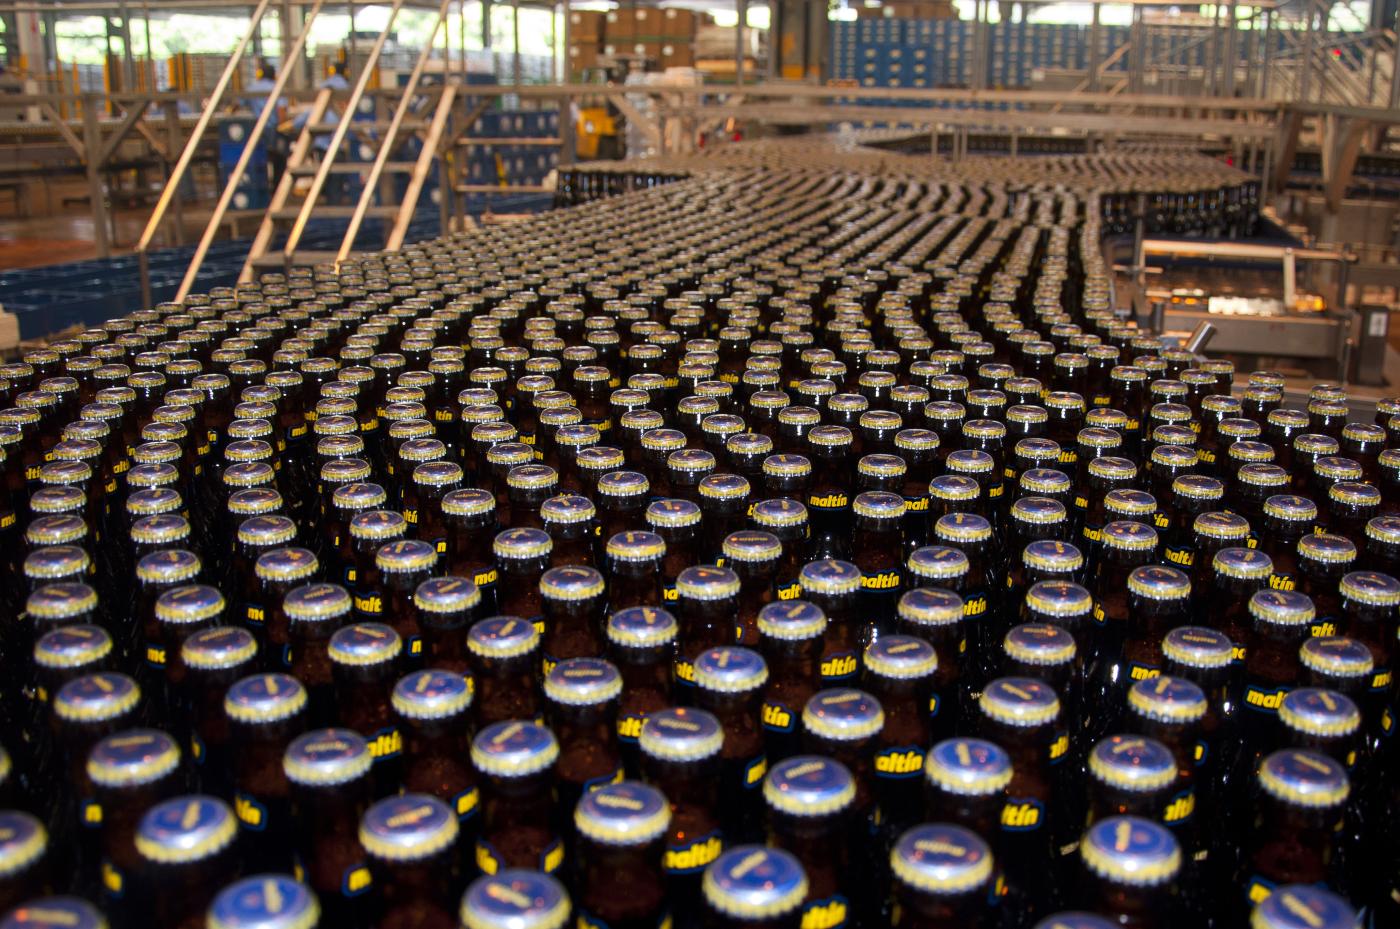 Cervecería Polar invierte 260 millones de bolívares en nueva línea de envasado (Fotos)